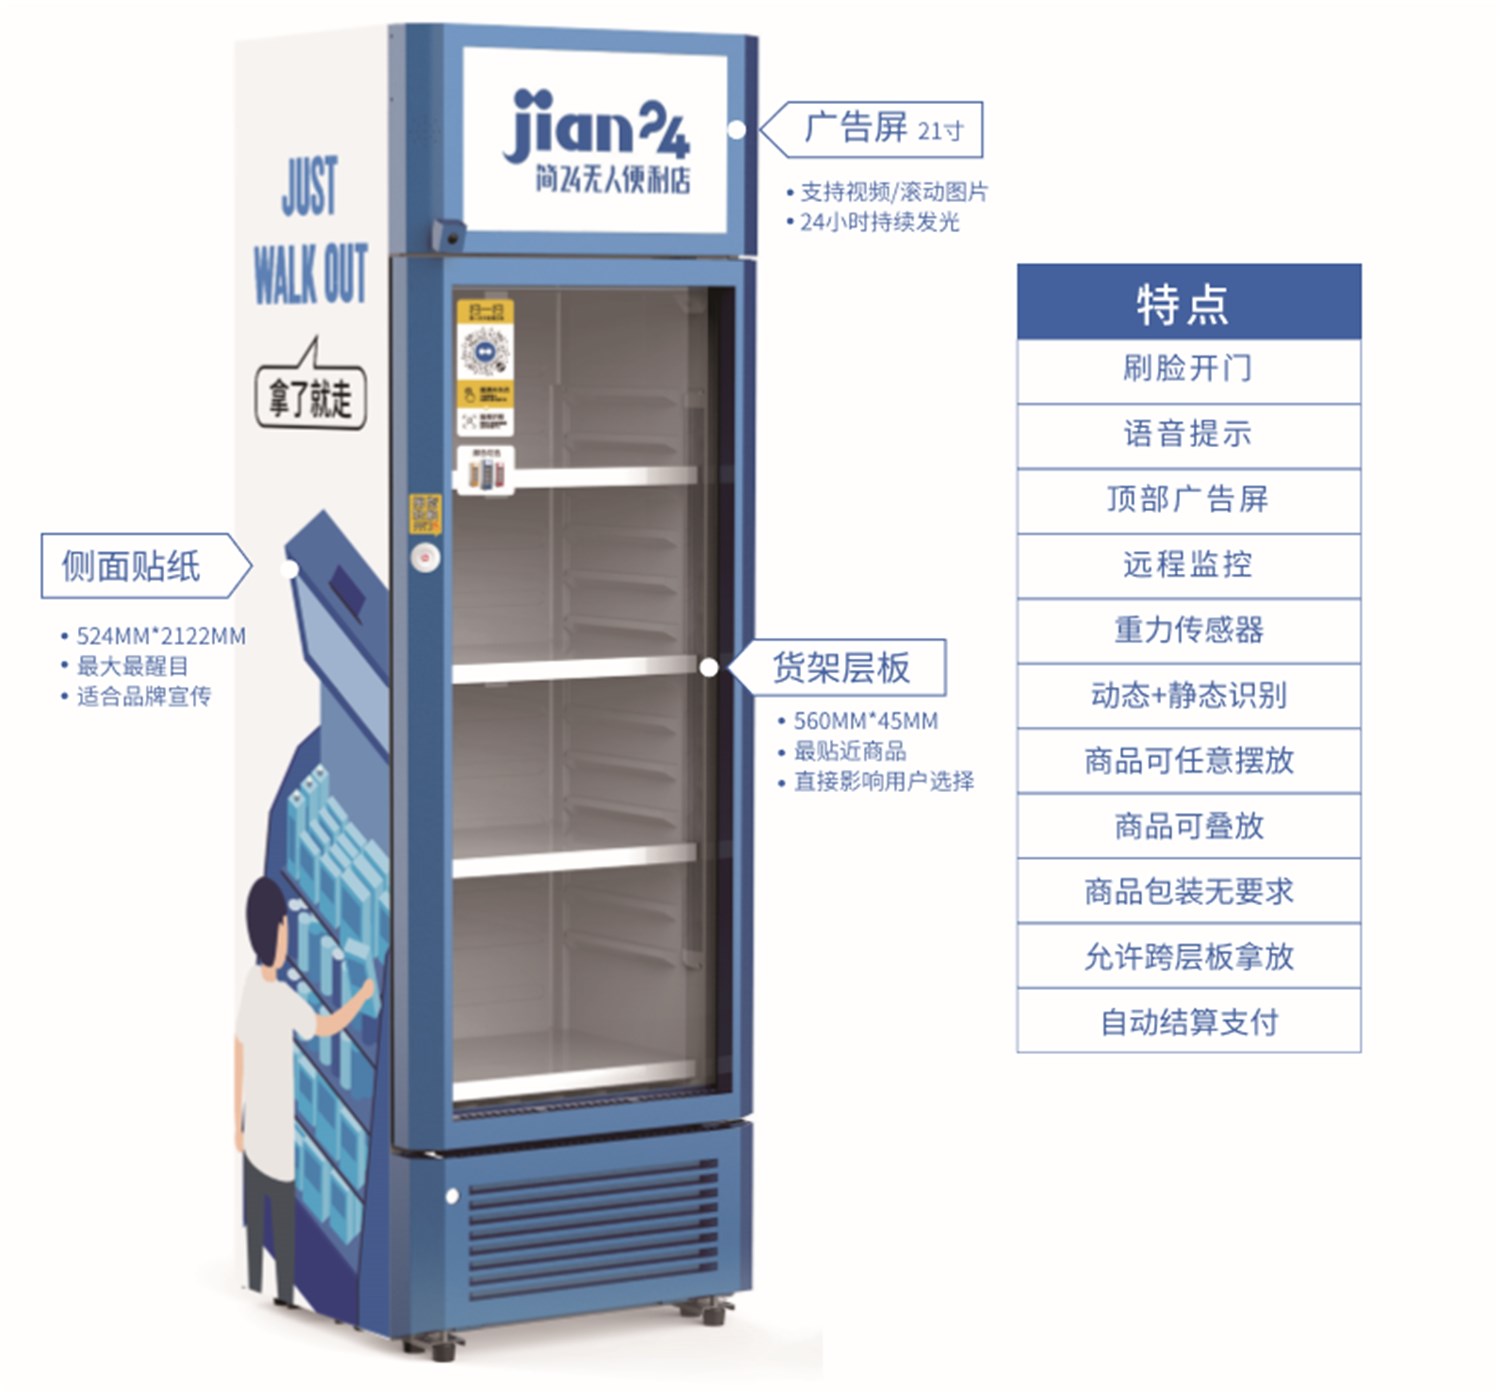 Jian24 Smart Vending Machine